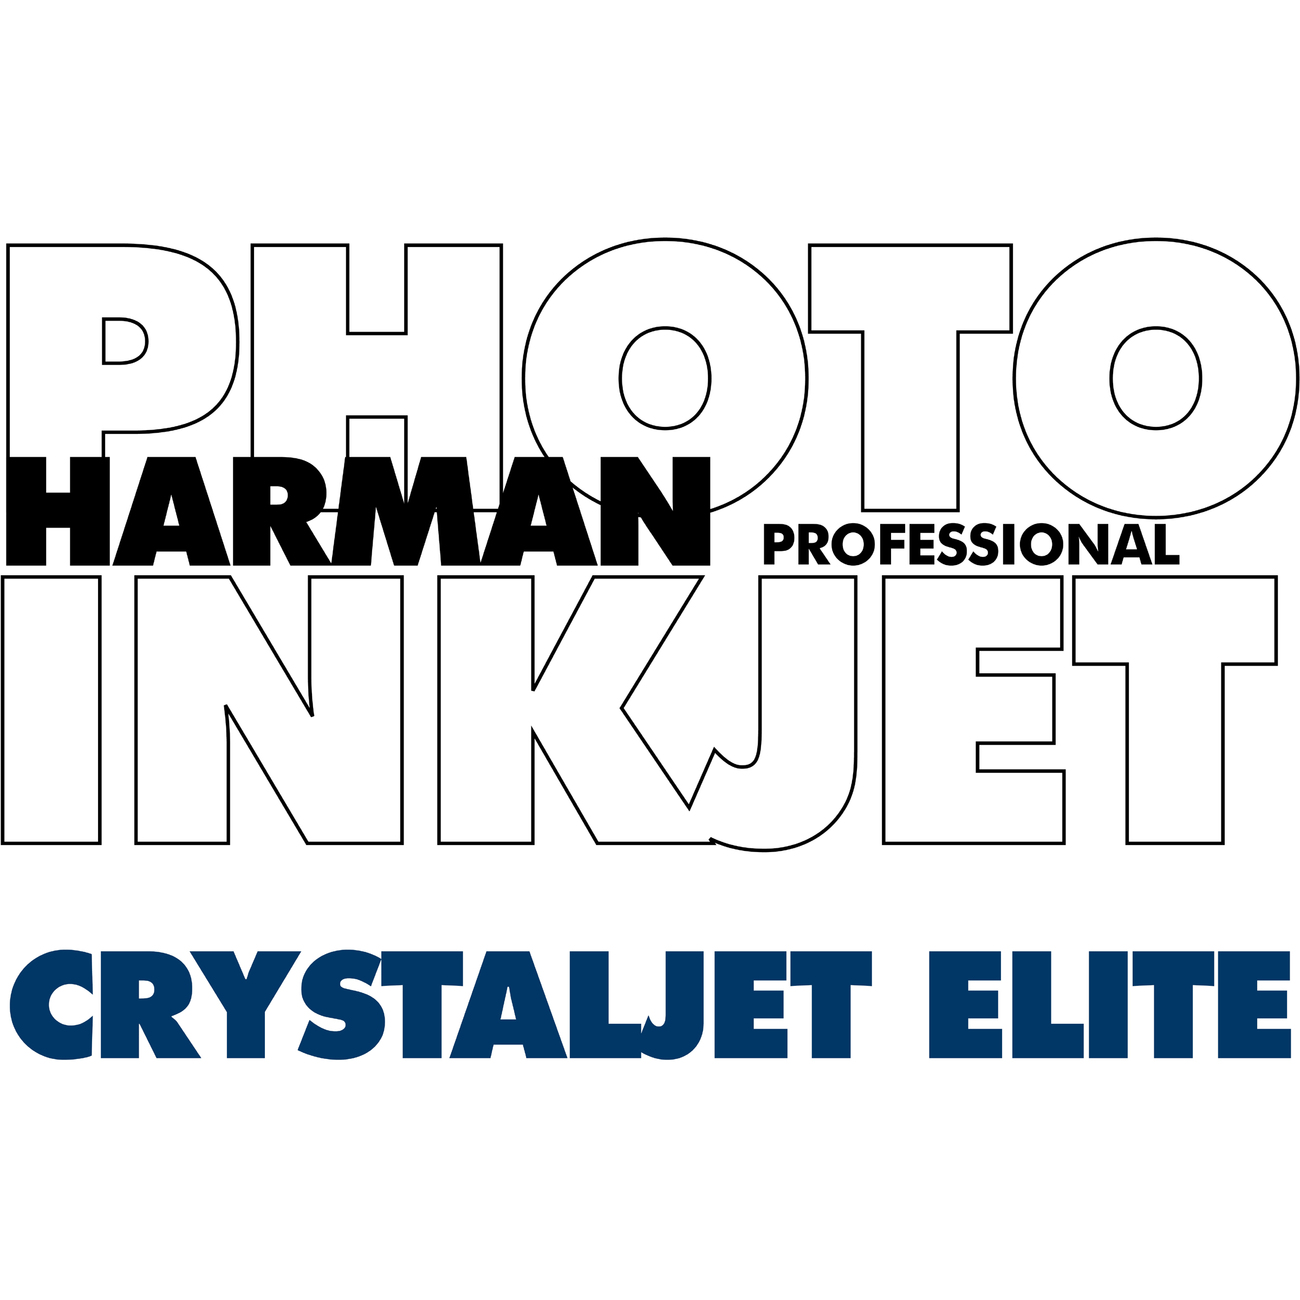 Harman Photo Crystaljet Elite Luster 24